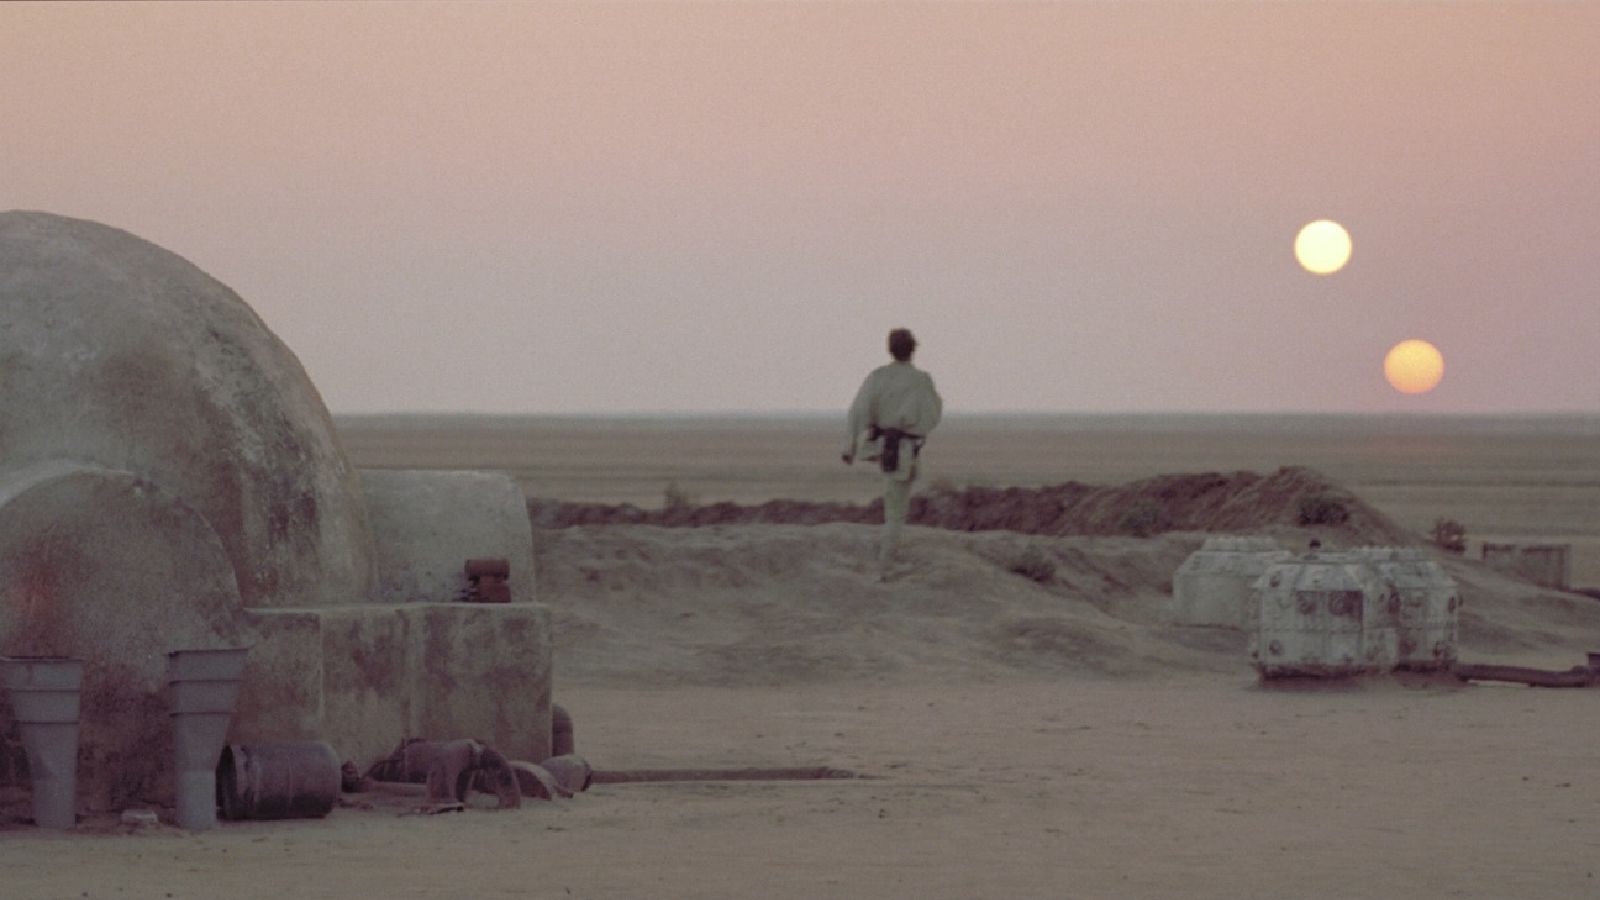 film still from Star Wars: A New Hope (1977)